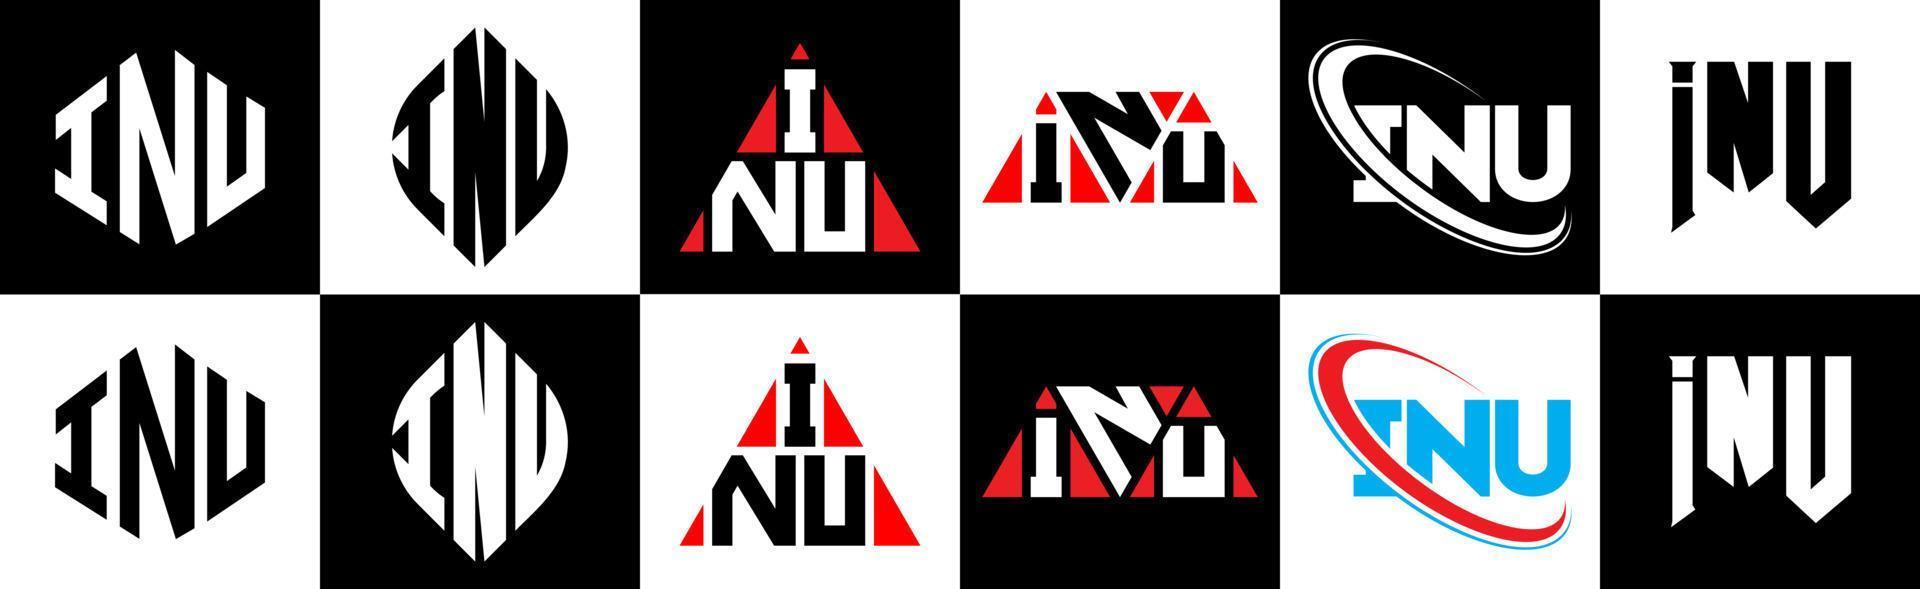 création de logo de lettre inu en six styles. inu polygone, cercle, triangle, hexagone, style plat et simple avec logo de lettre de variation de couleur noir et blanc dans un plan de travail. inu logo minimaliste et classique vecteur